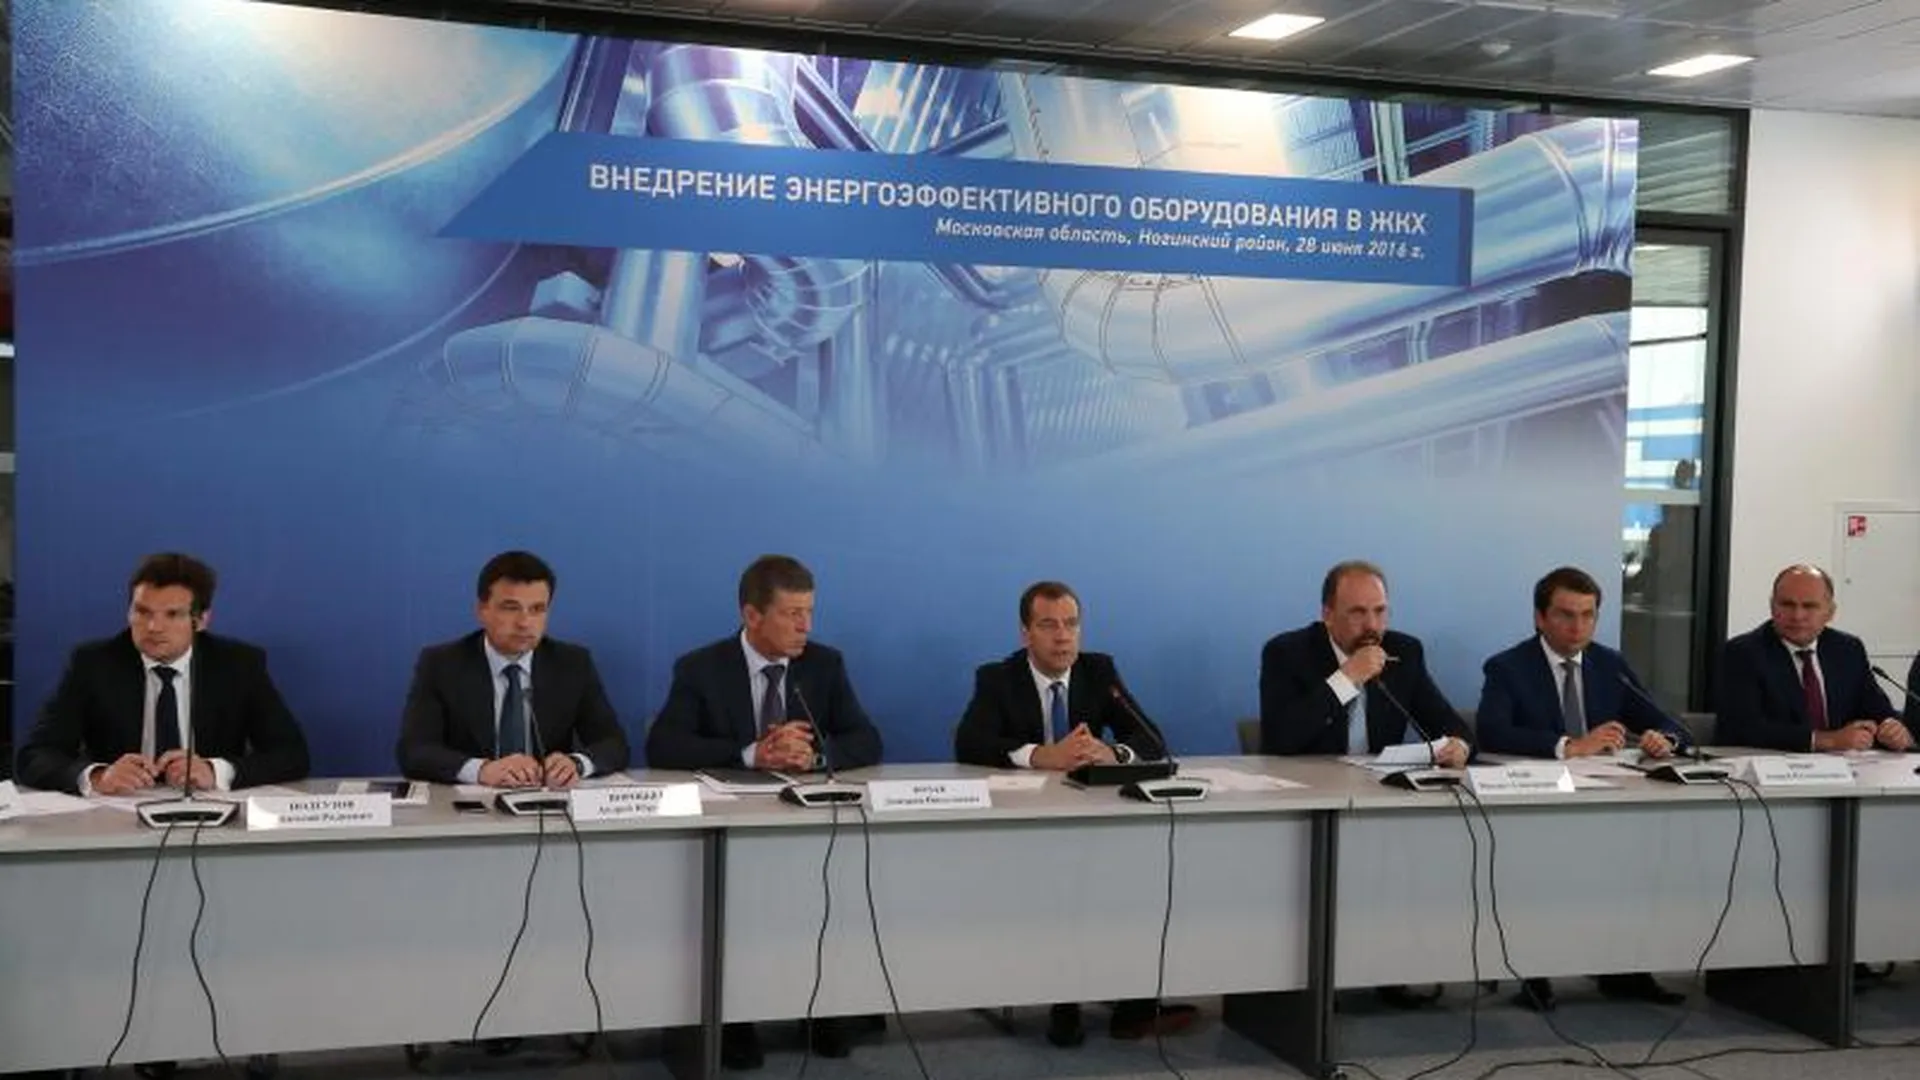 Медведев: на латание дыр в ЖКХ тратятся огромные средства